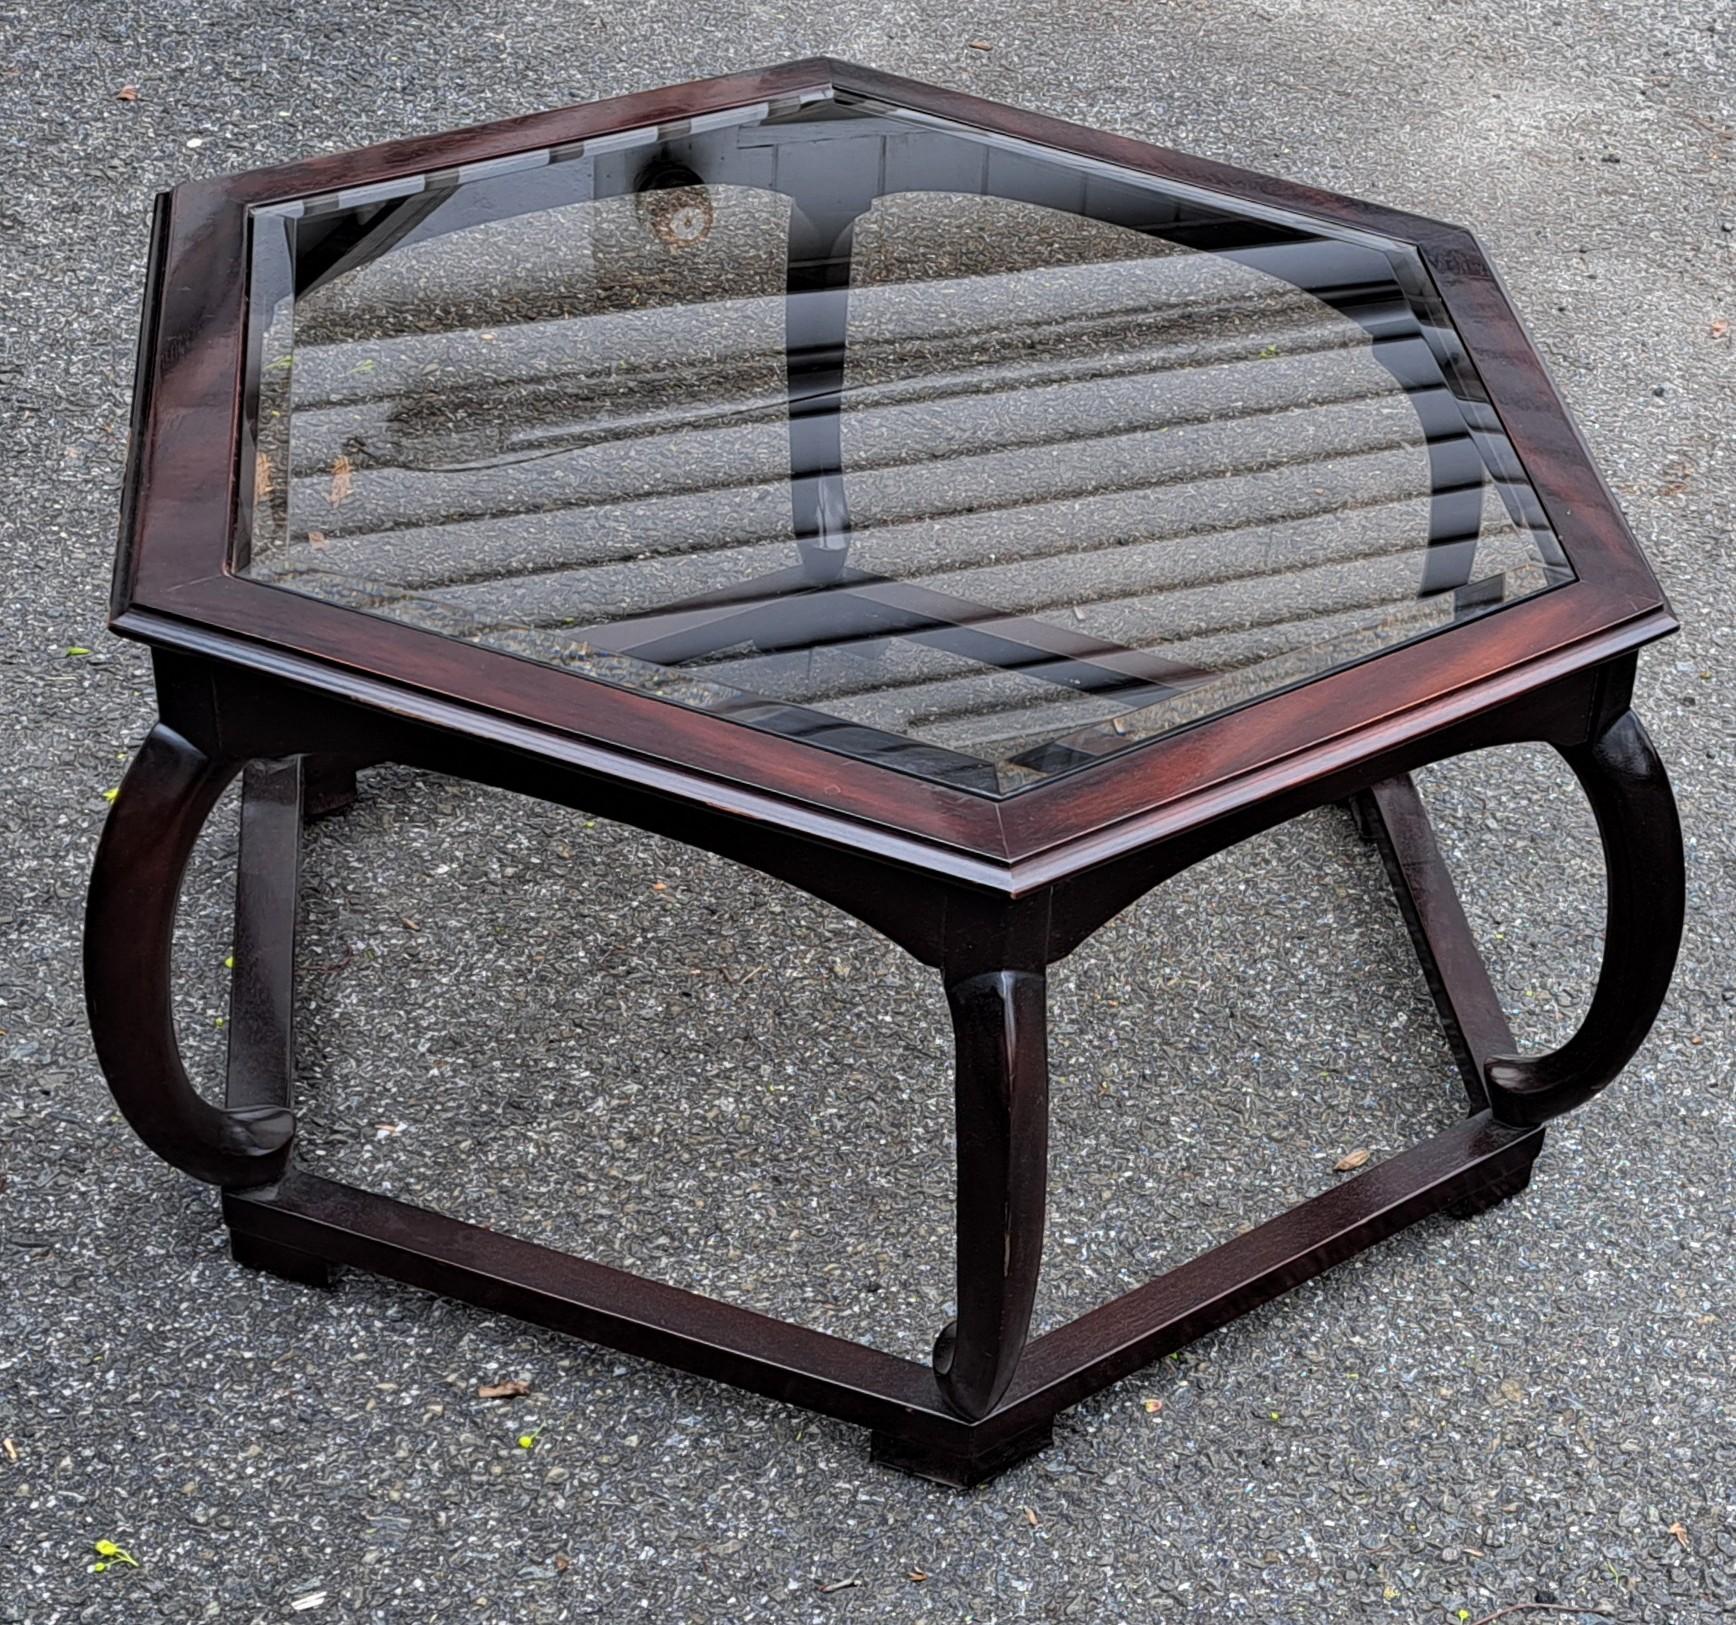 Elégante table basse hexagonale de style Hollywood Regency avec plateau en verre sur mesure et supports incurvés.